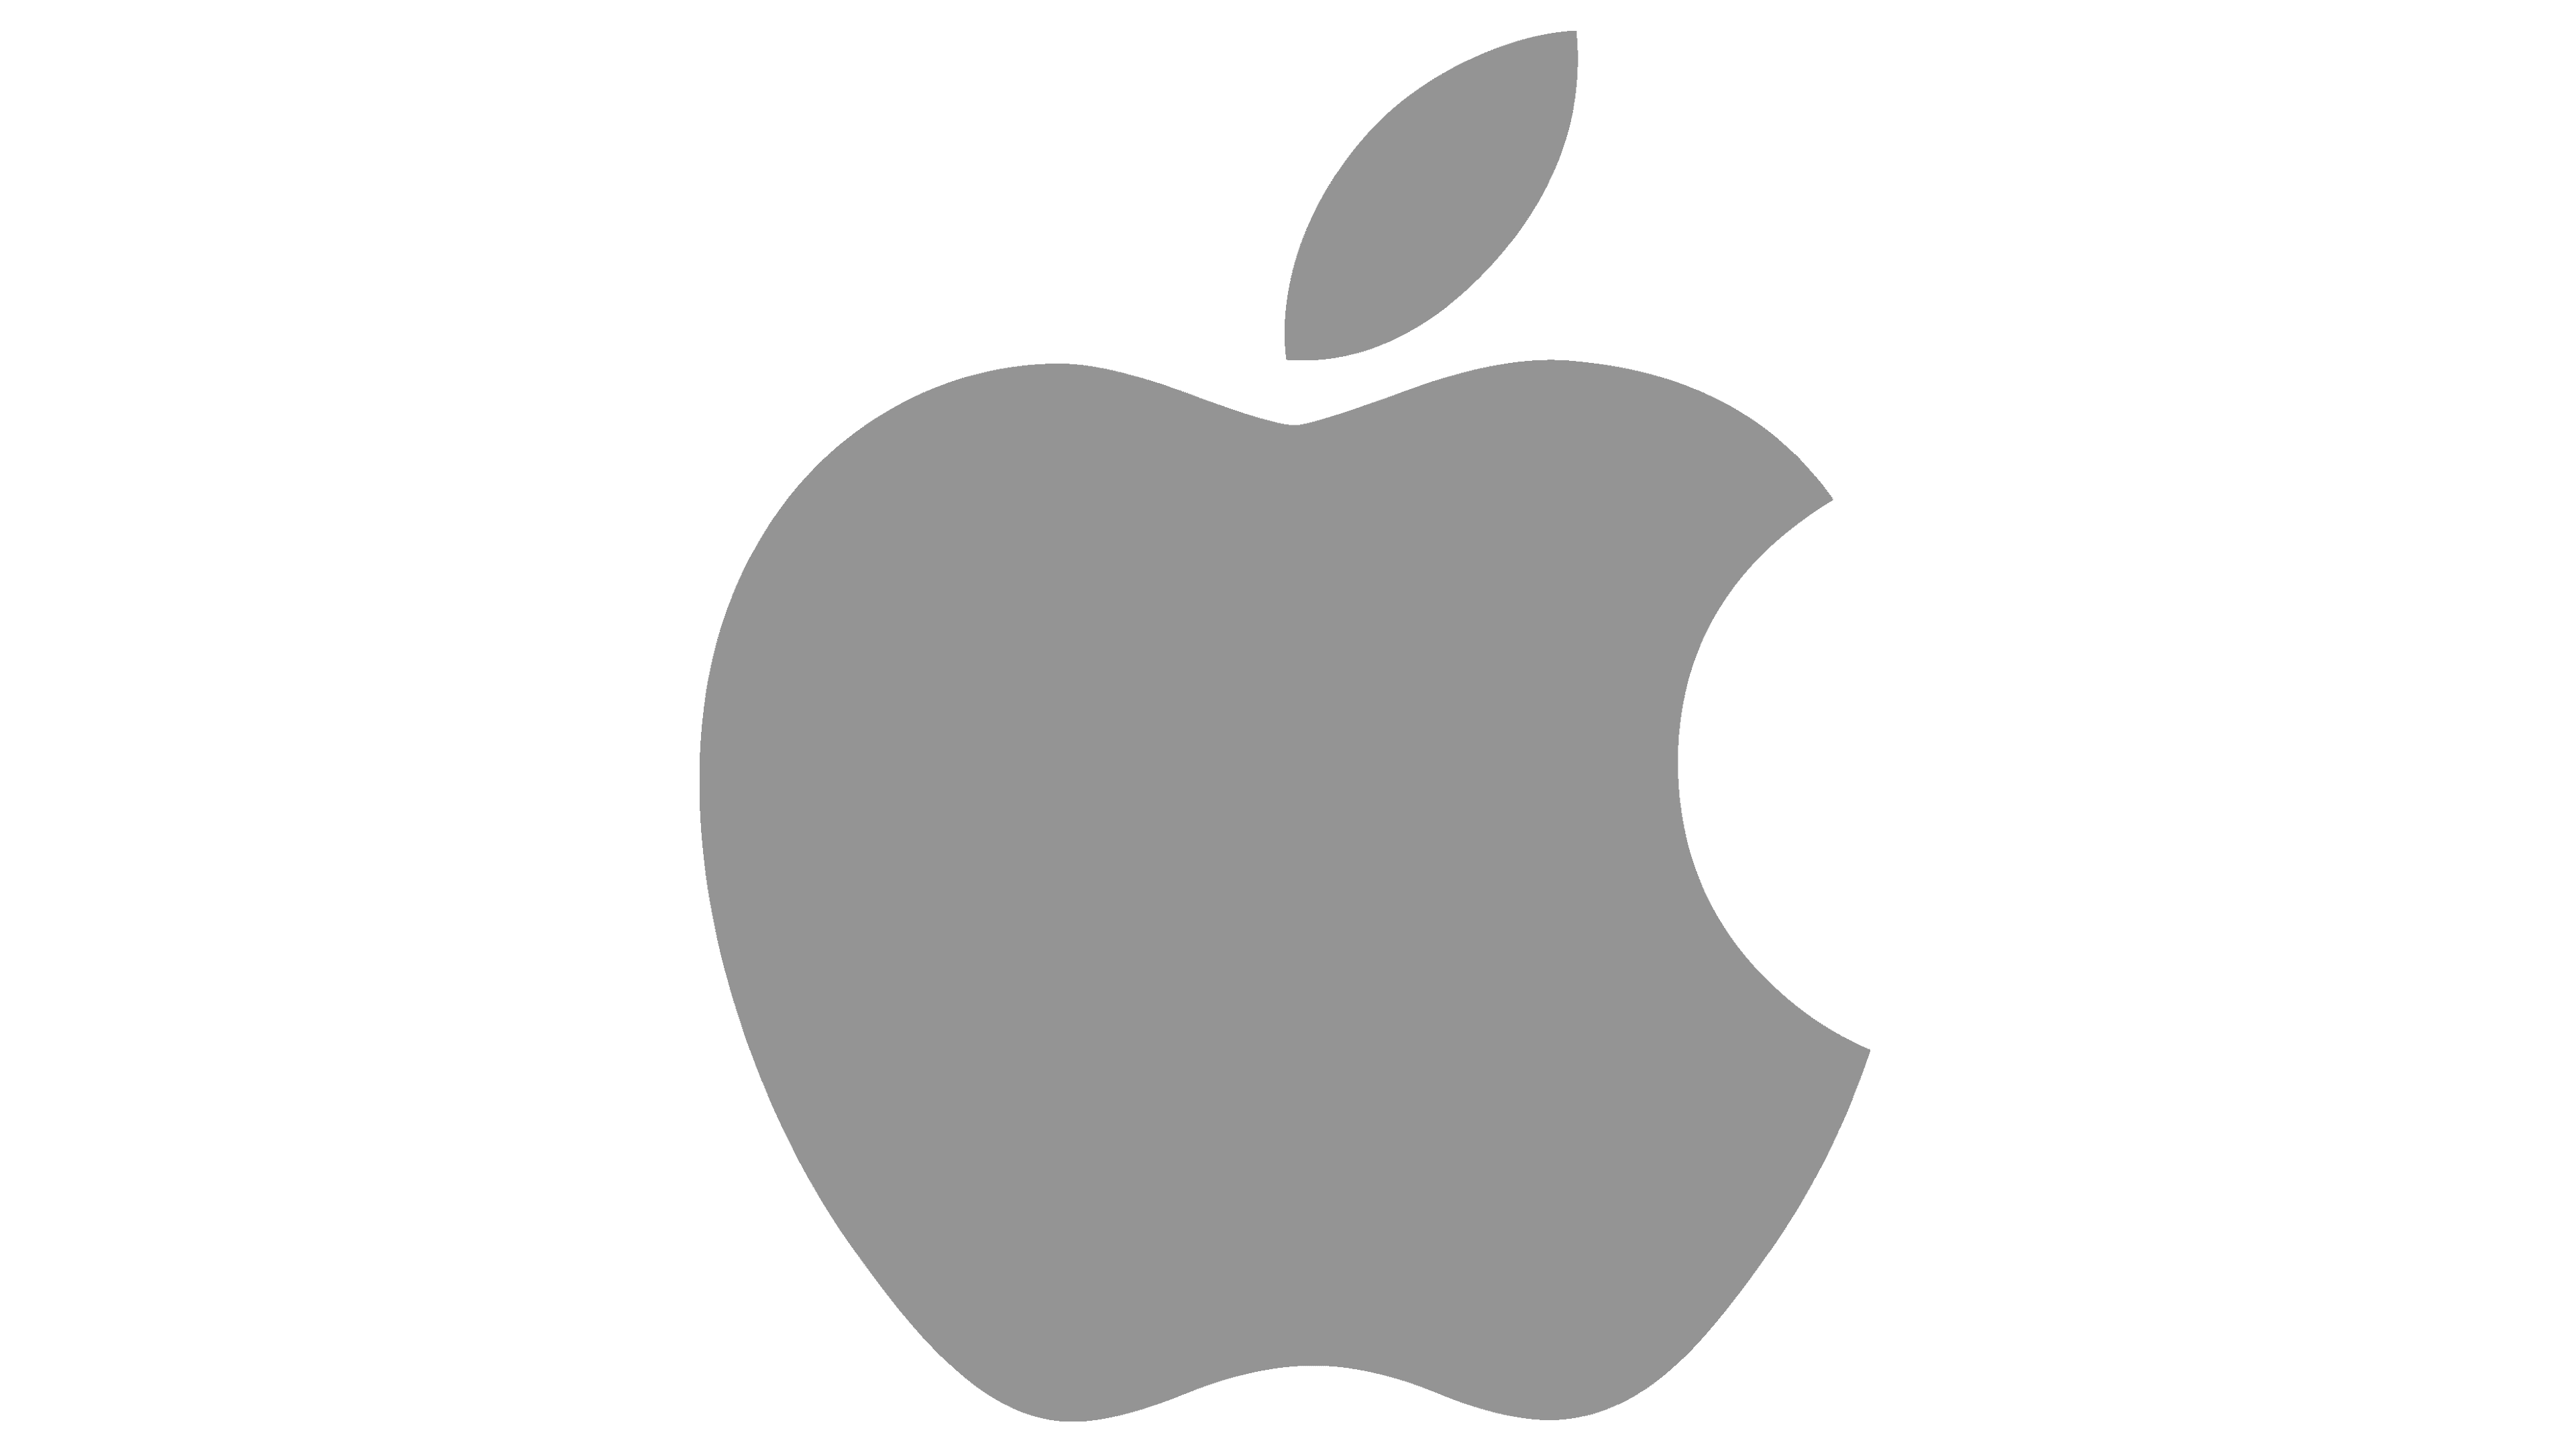 Cesta ke kvalitě a Inovacím: Proč zvolit značku Apple?